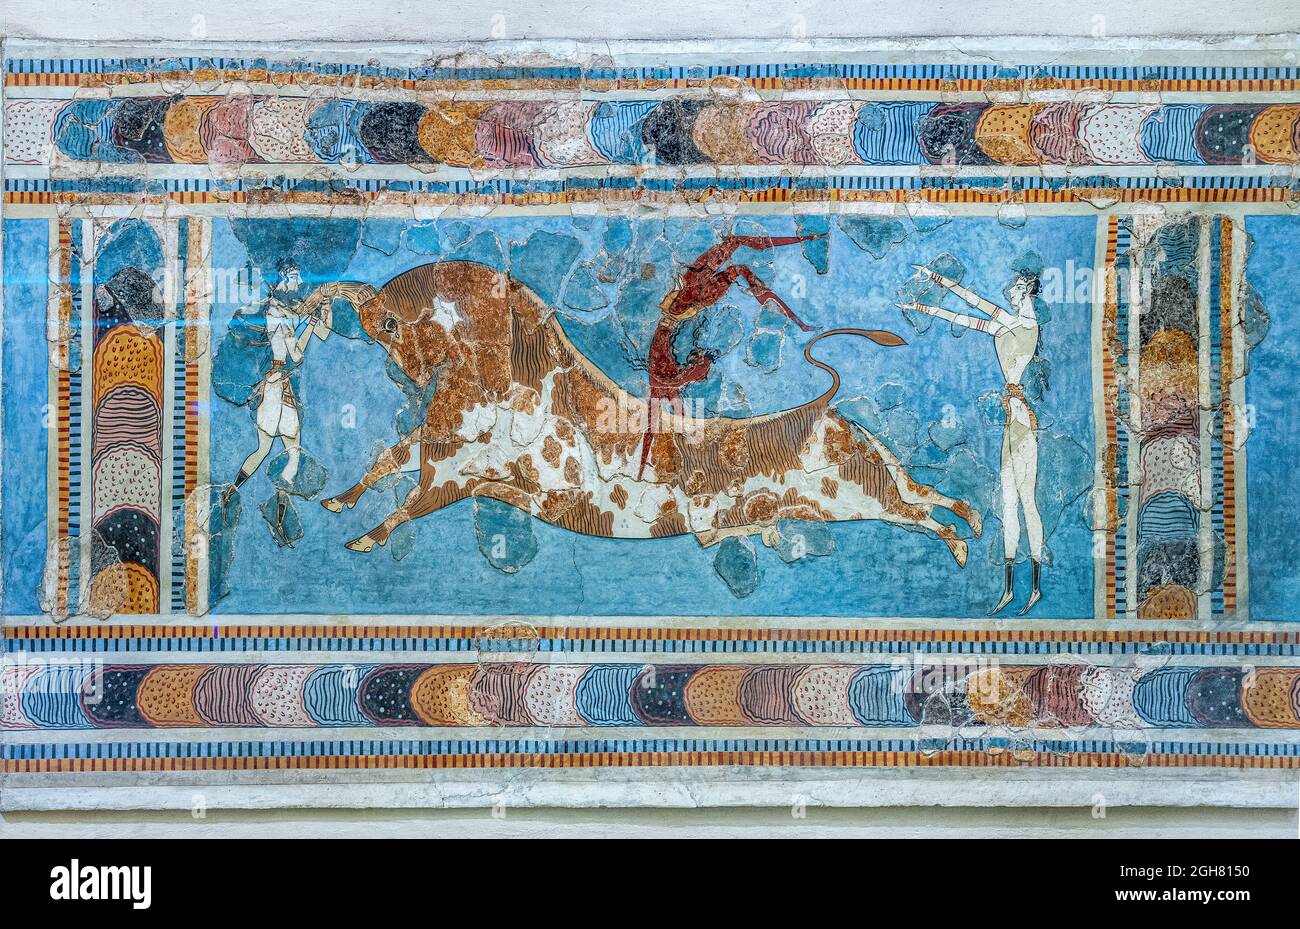 Minoan Fresco, taureau, du Palais de Knossos, nouvelle période de palais, 1450 av. J.-C. Musée archéologique d'Héraklion, Crète, Grèce. Banque D'Images